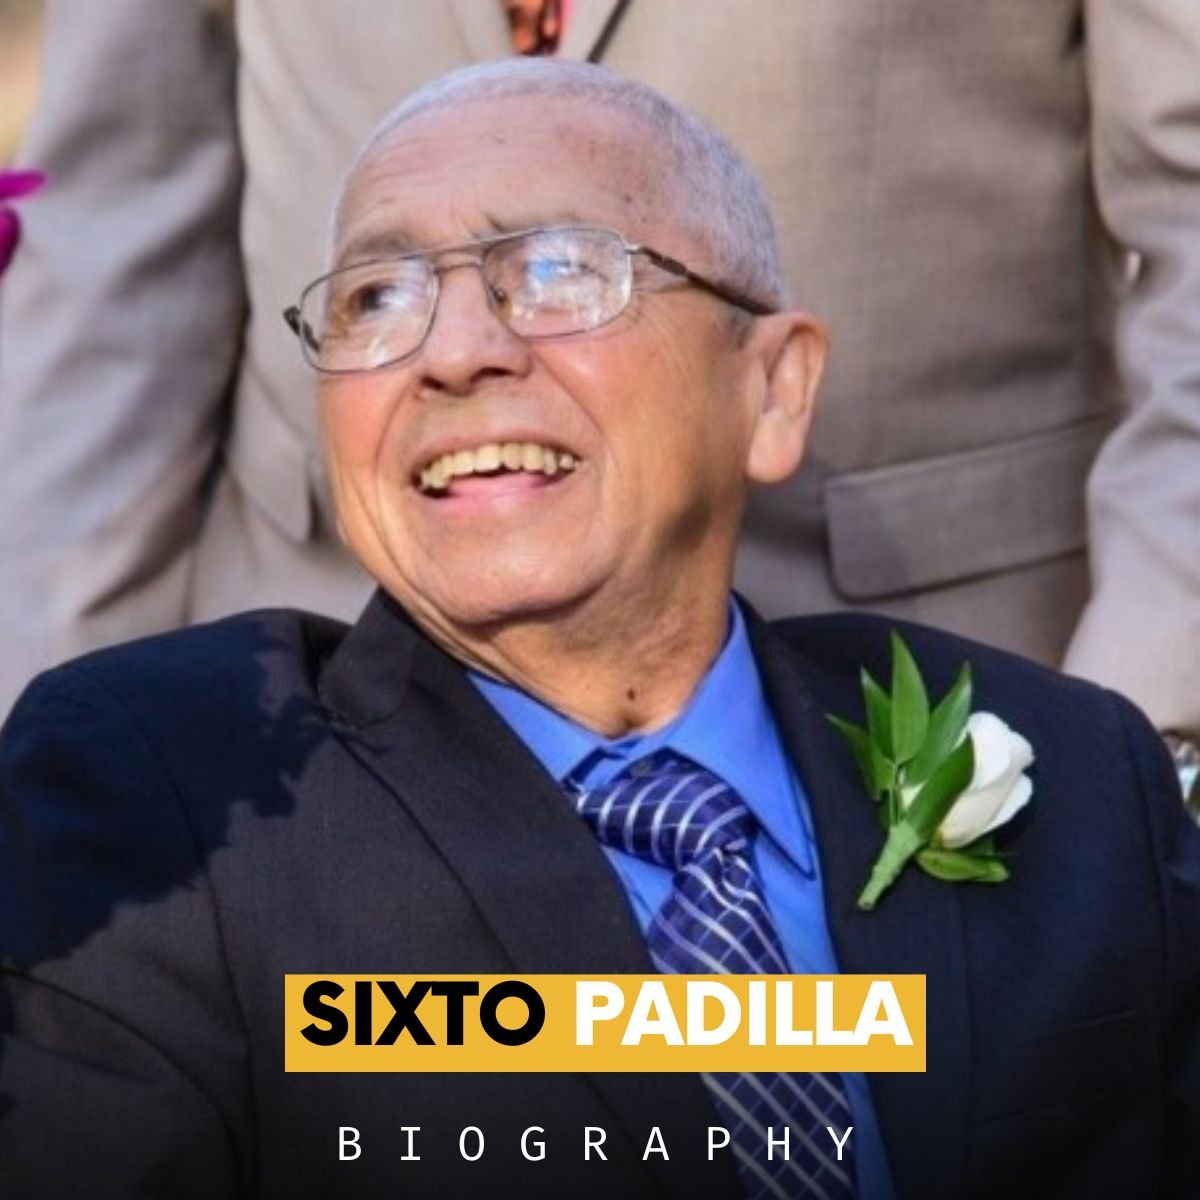 who is Sixto Padilla